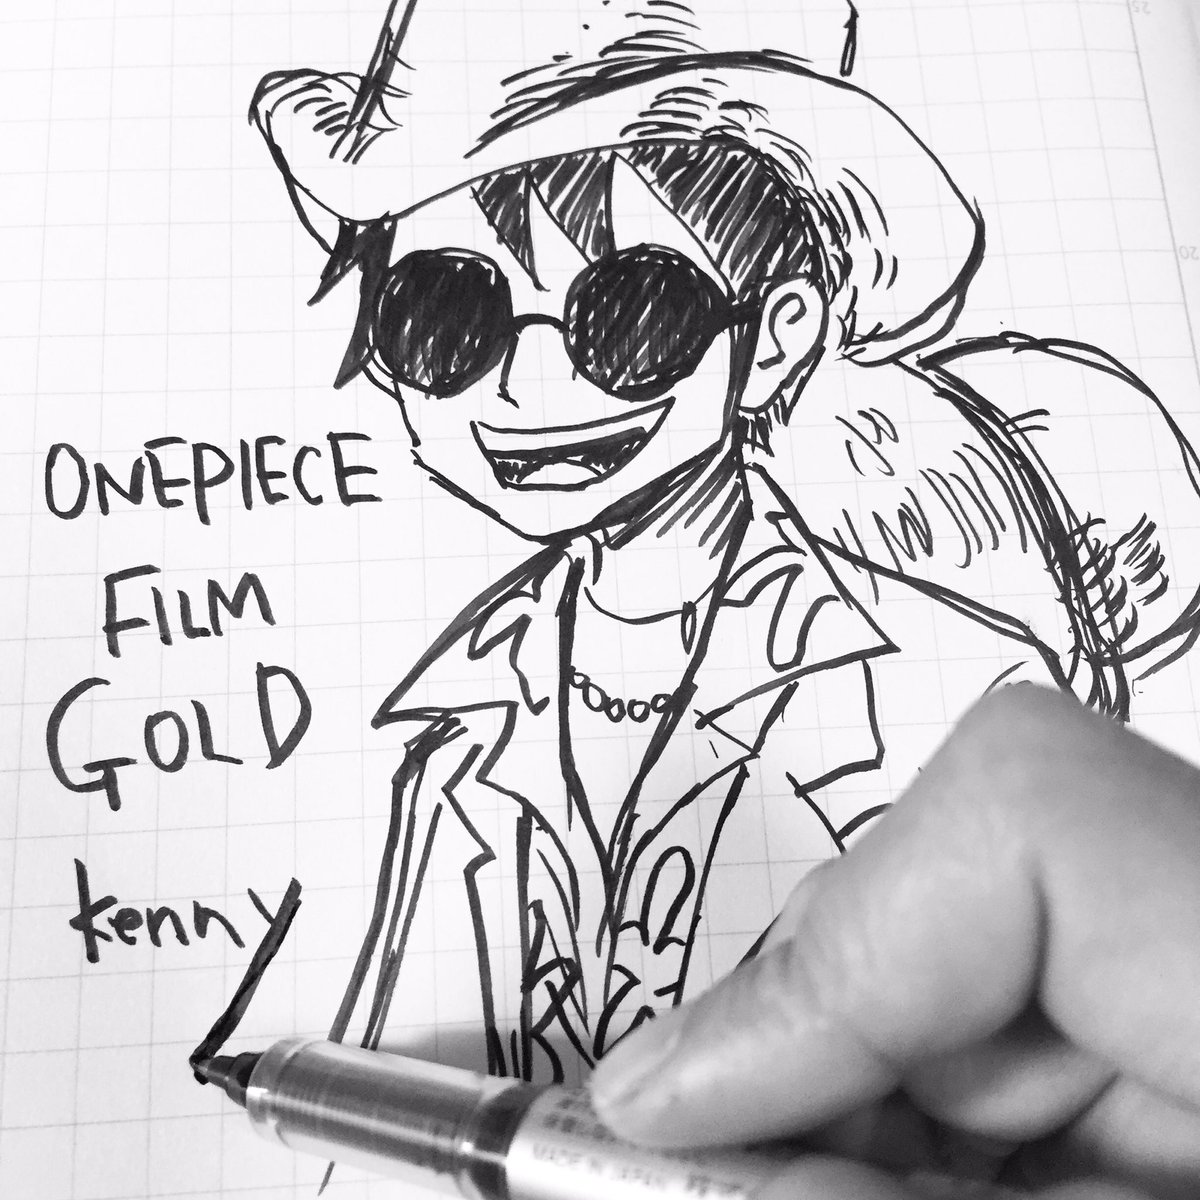 ワンピース研究チャンネル Kenny على تويتر カジノルフィ 映画の付録のトランプが勿体無くて開けれません ワンピース映画 ワンピースフィルムゴールド ワンピースお絵描き